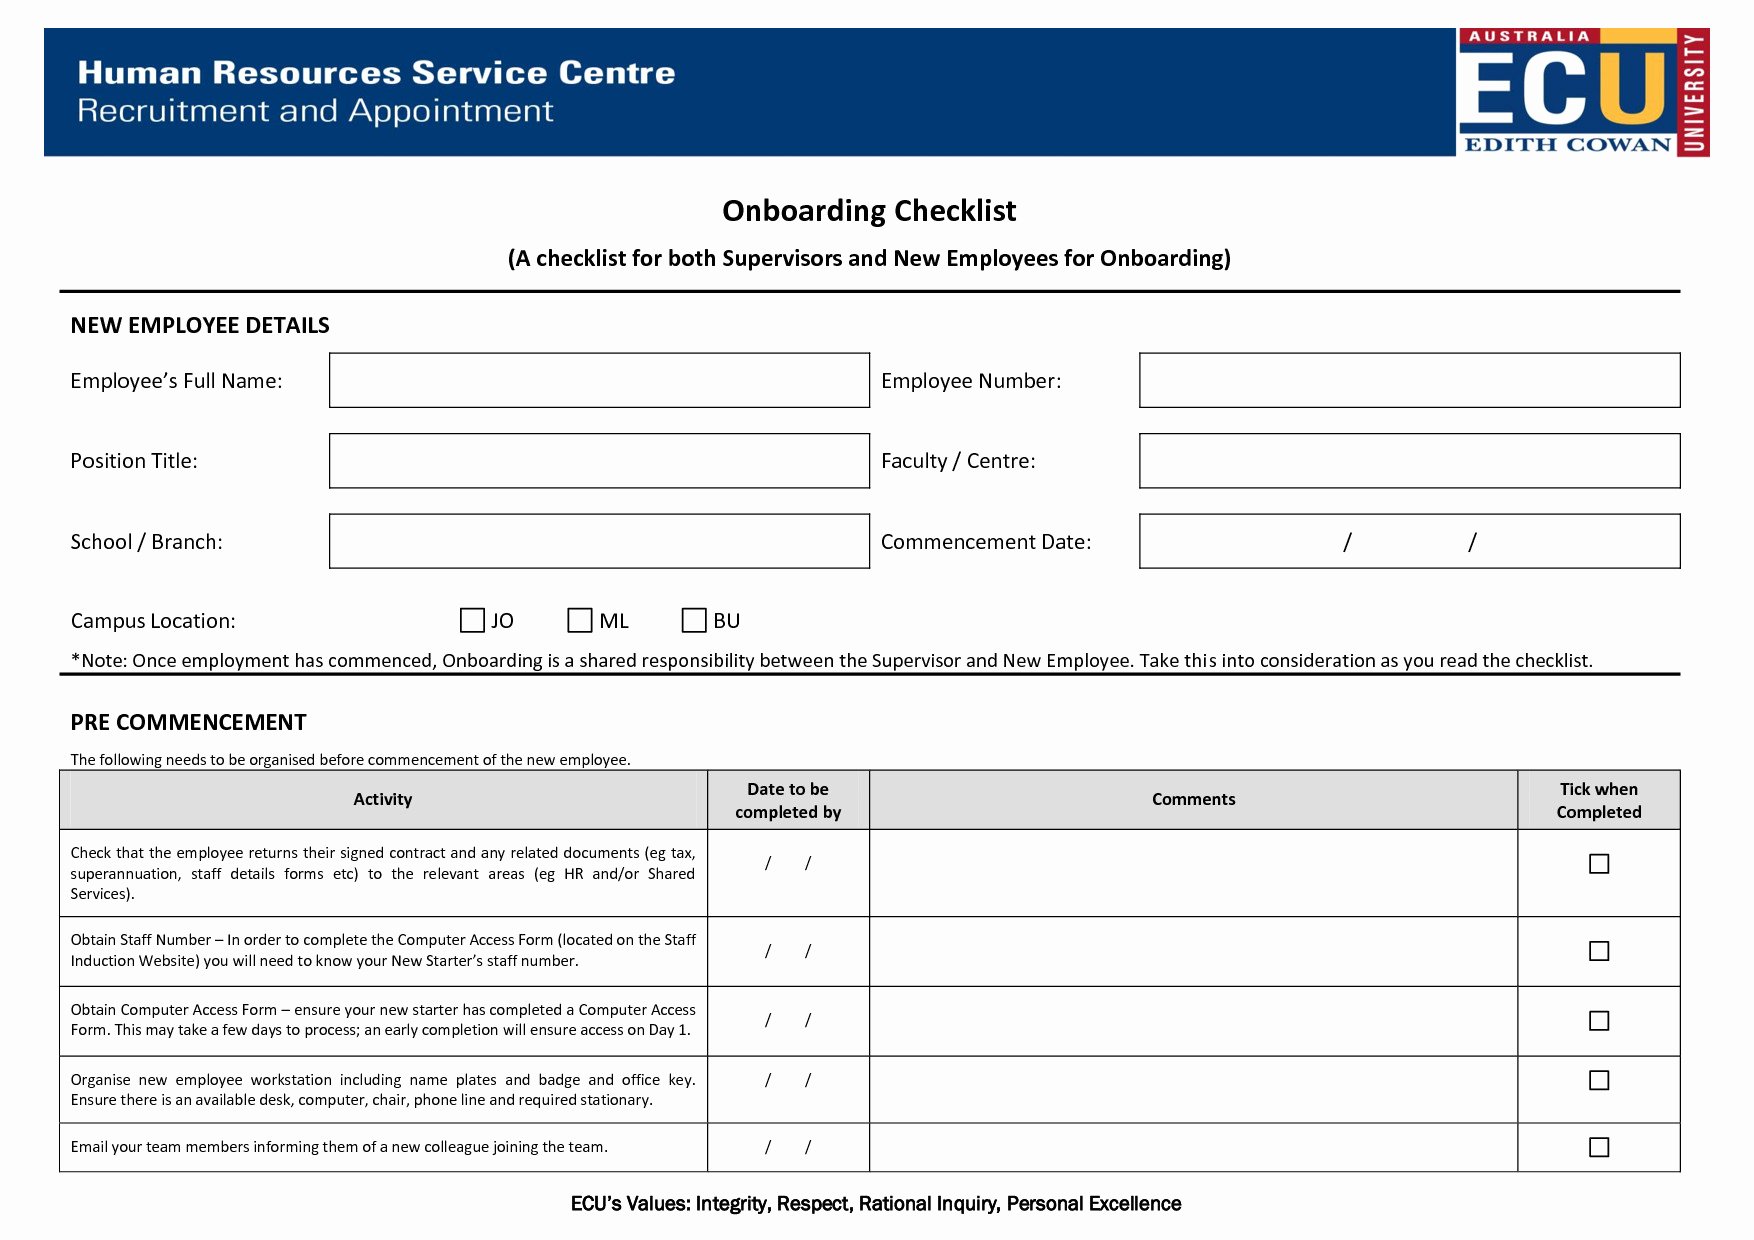 Onboarding Checklist Template Excel Unique Boarding Checklist Template Excel